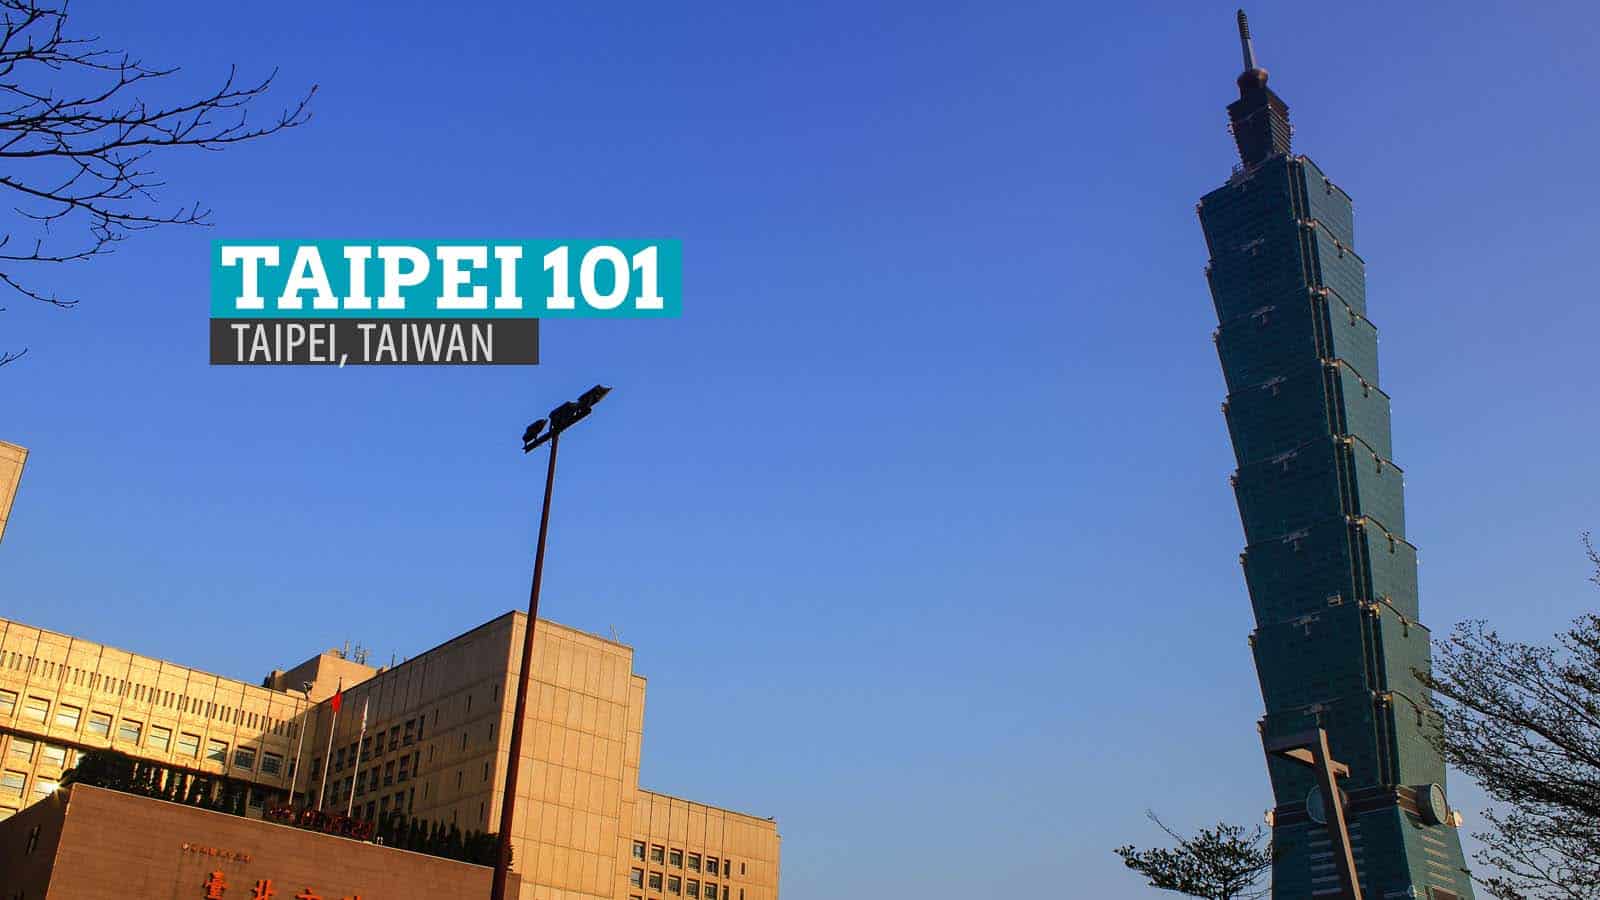 Taipei 101: Reaching New Heights in Taiwan